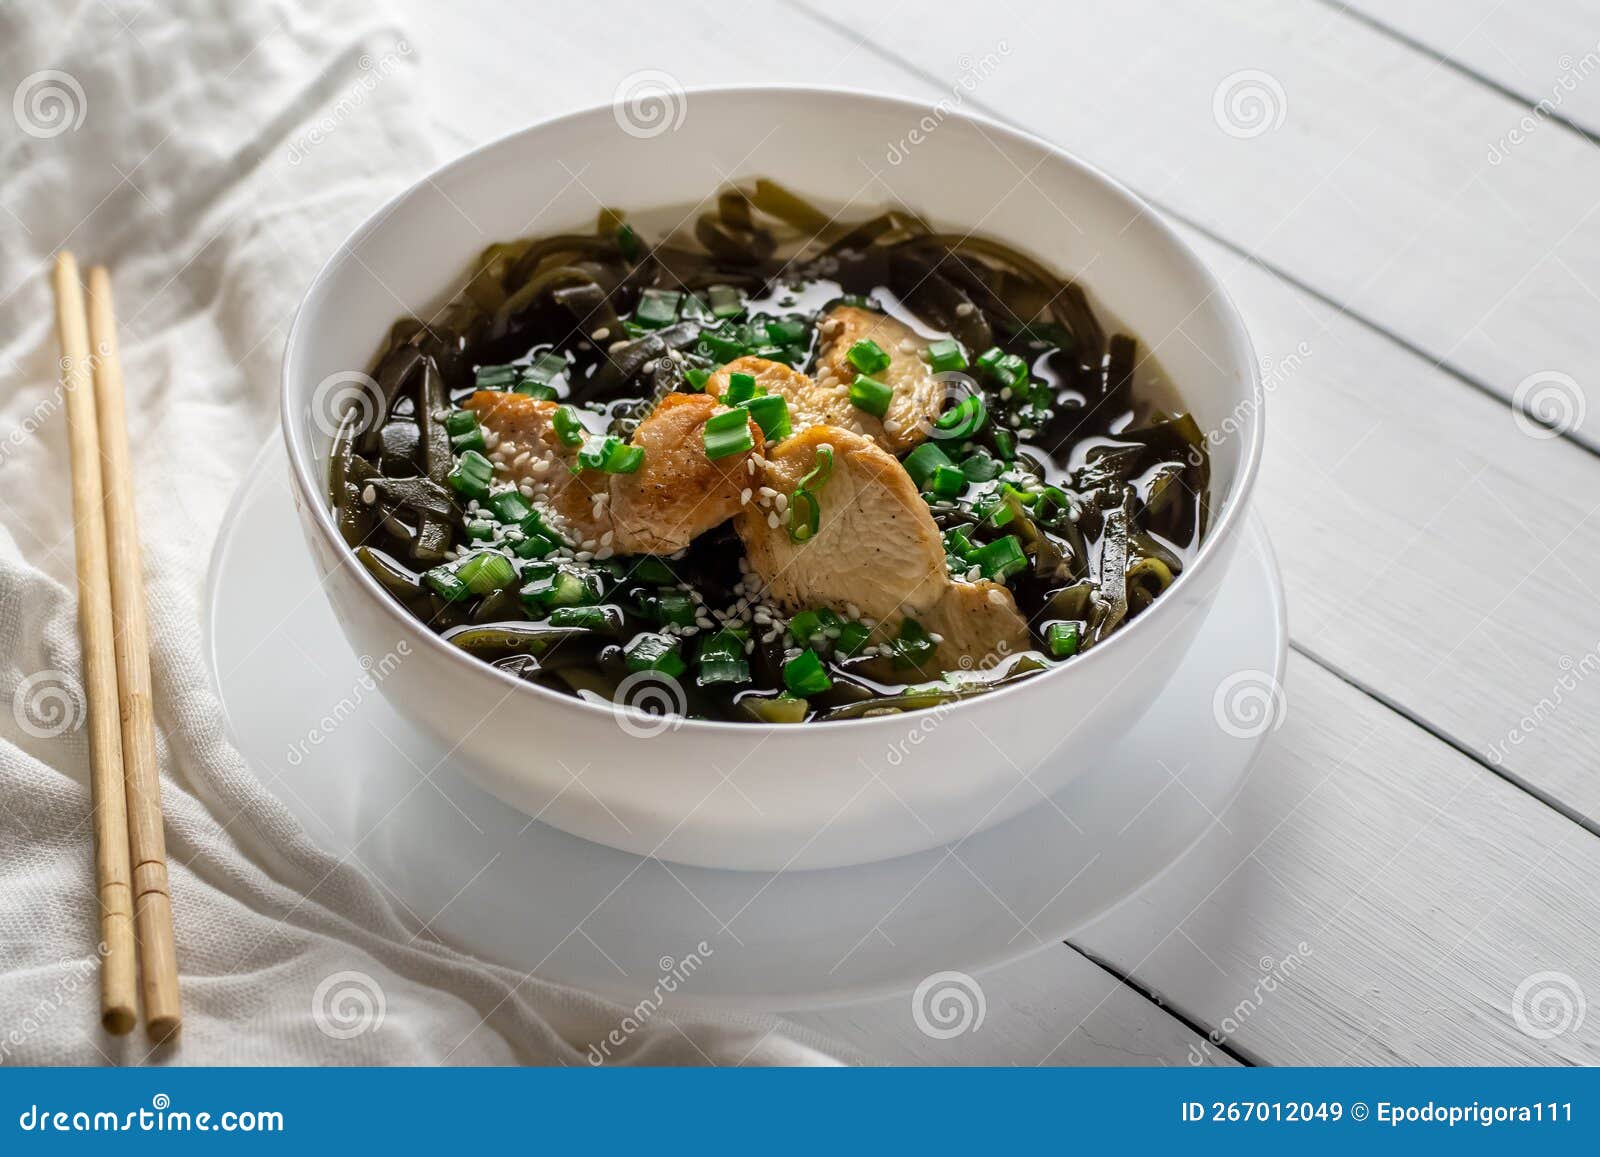 韩国菜牡蛎海藻汤, 米约古克图片免费下载-5064404001-千图网Pro